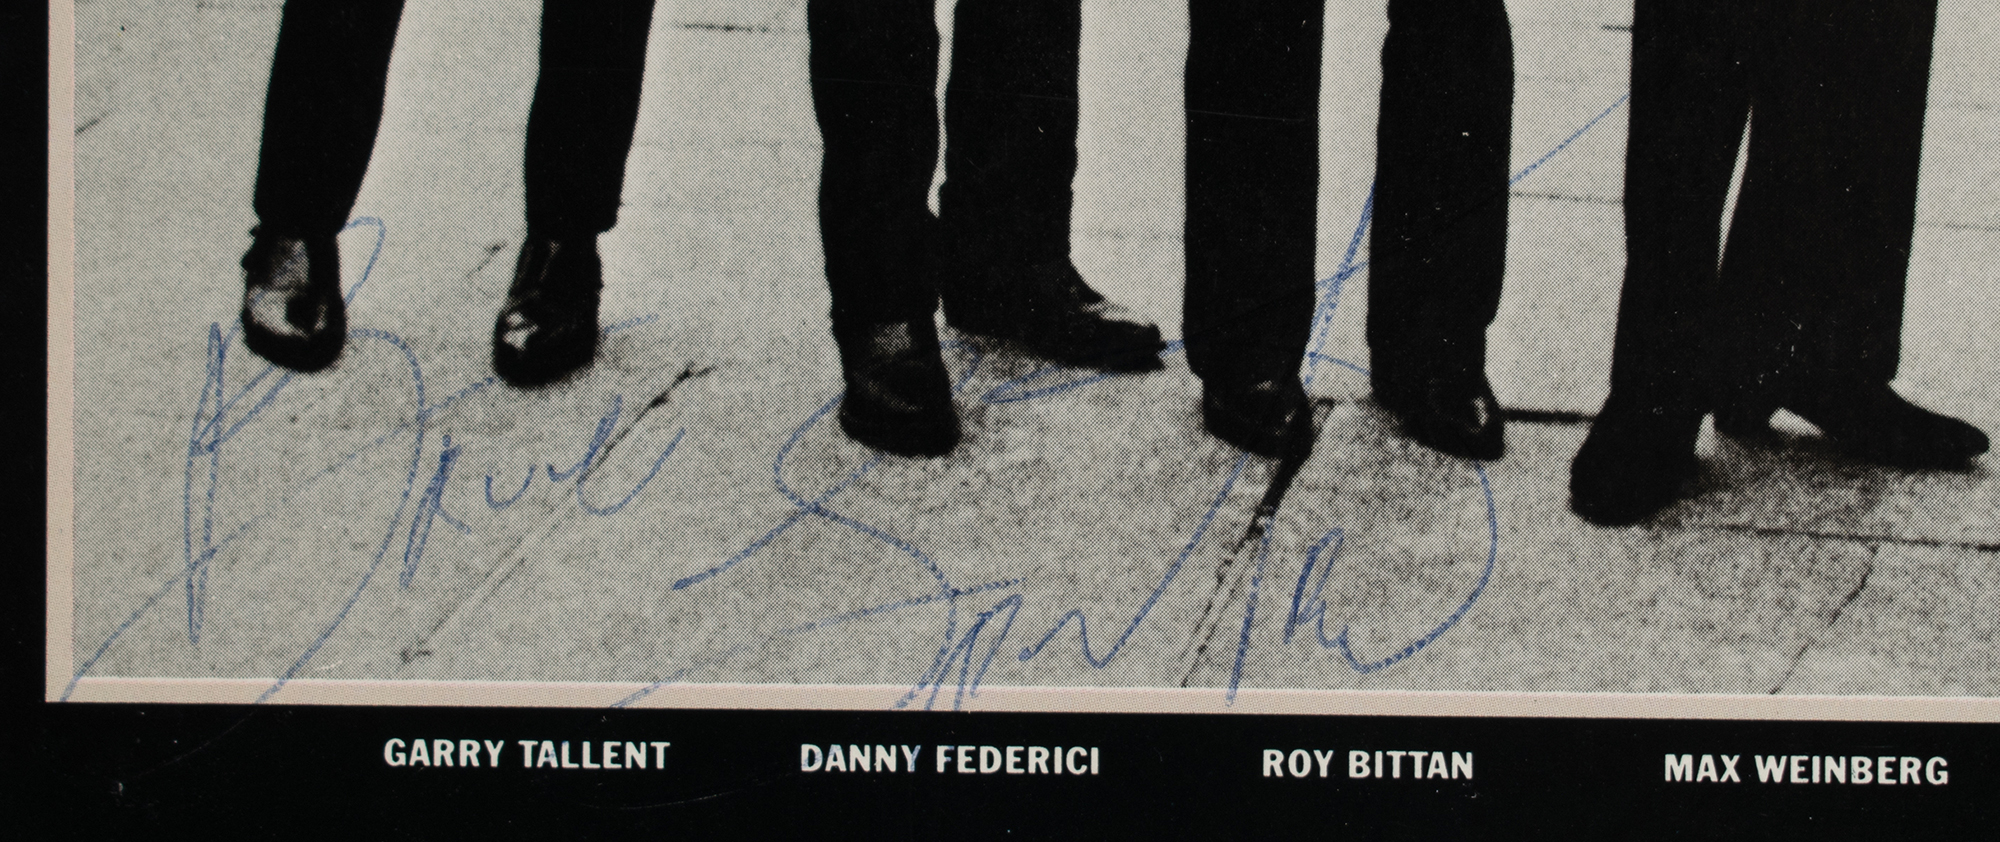 Lot #4441 Bruce Springsteen Signed Album - Image 2